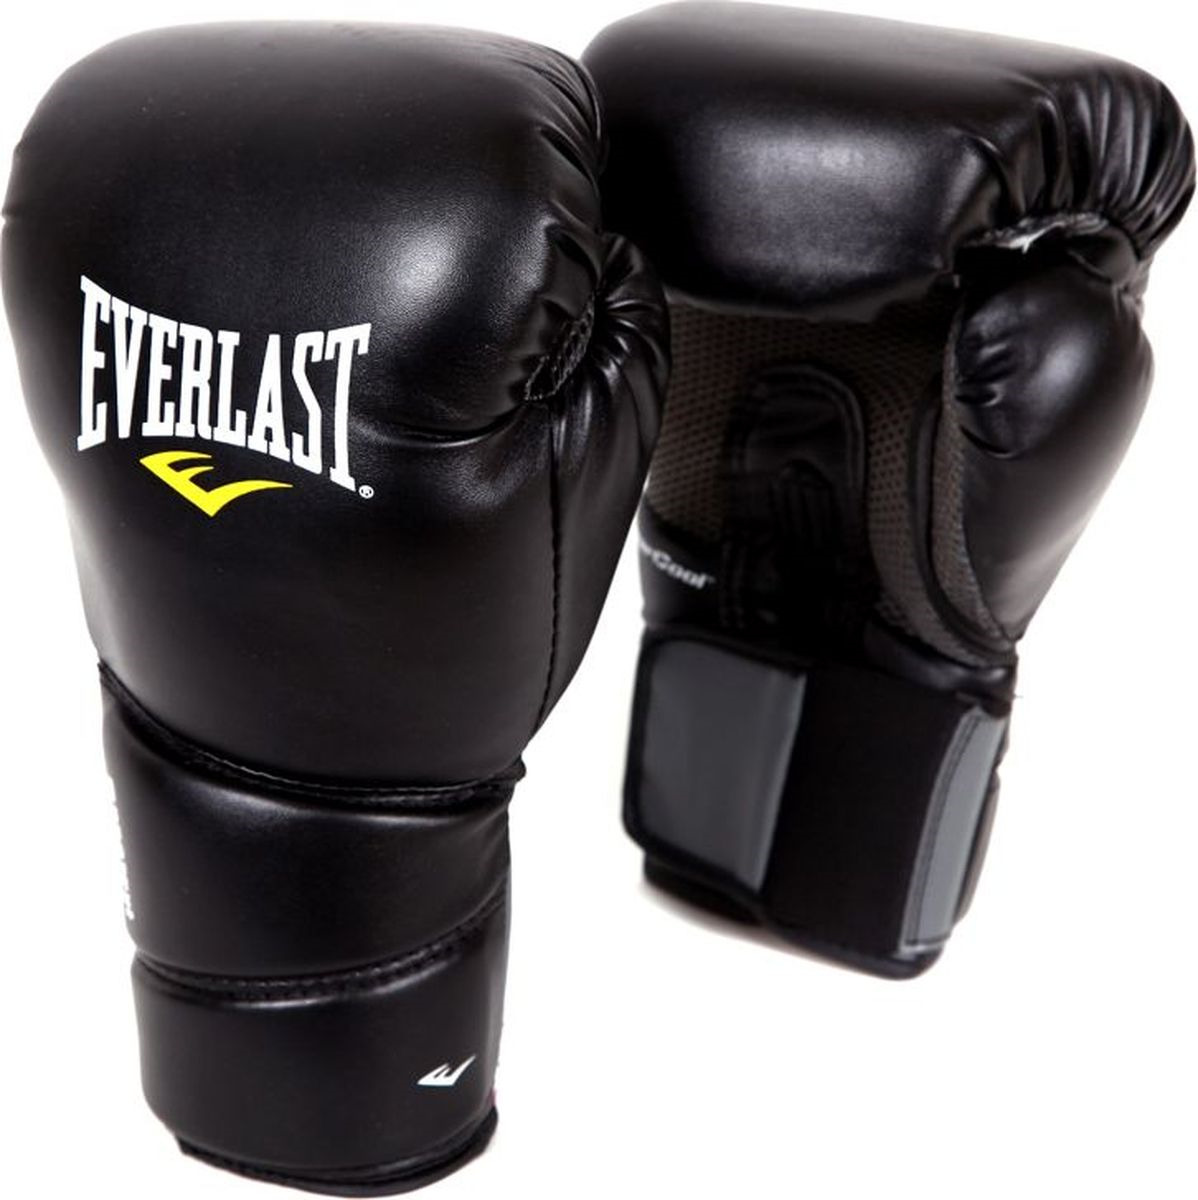 Боксерские перчатки Everlast Protex2, тренировочные, 3108SMU, черный, вес 8 унций, размер S/M